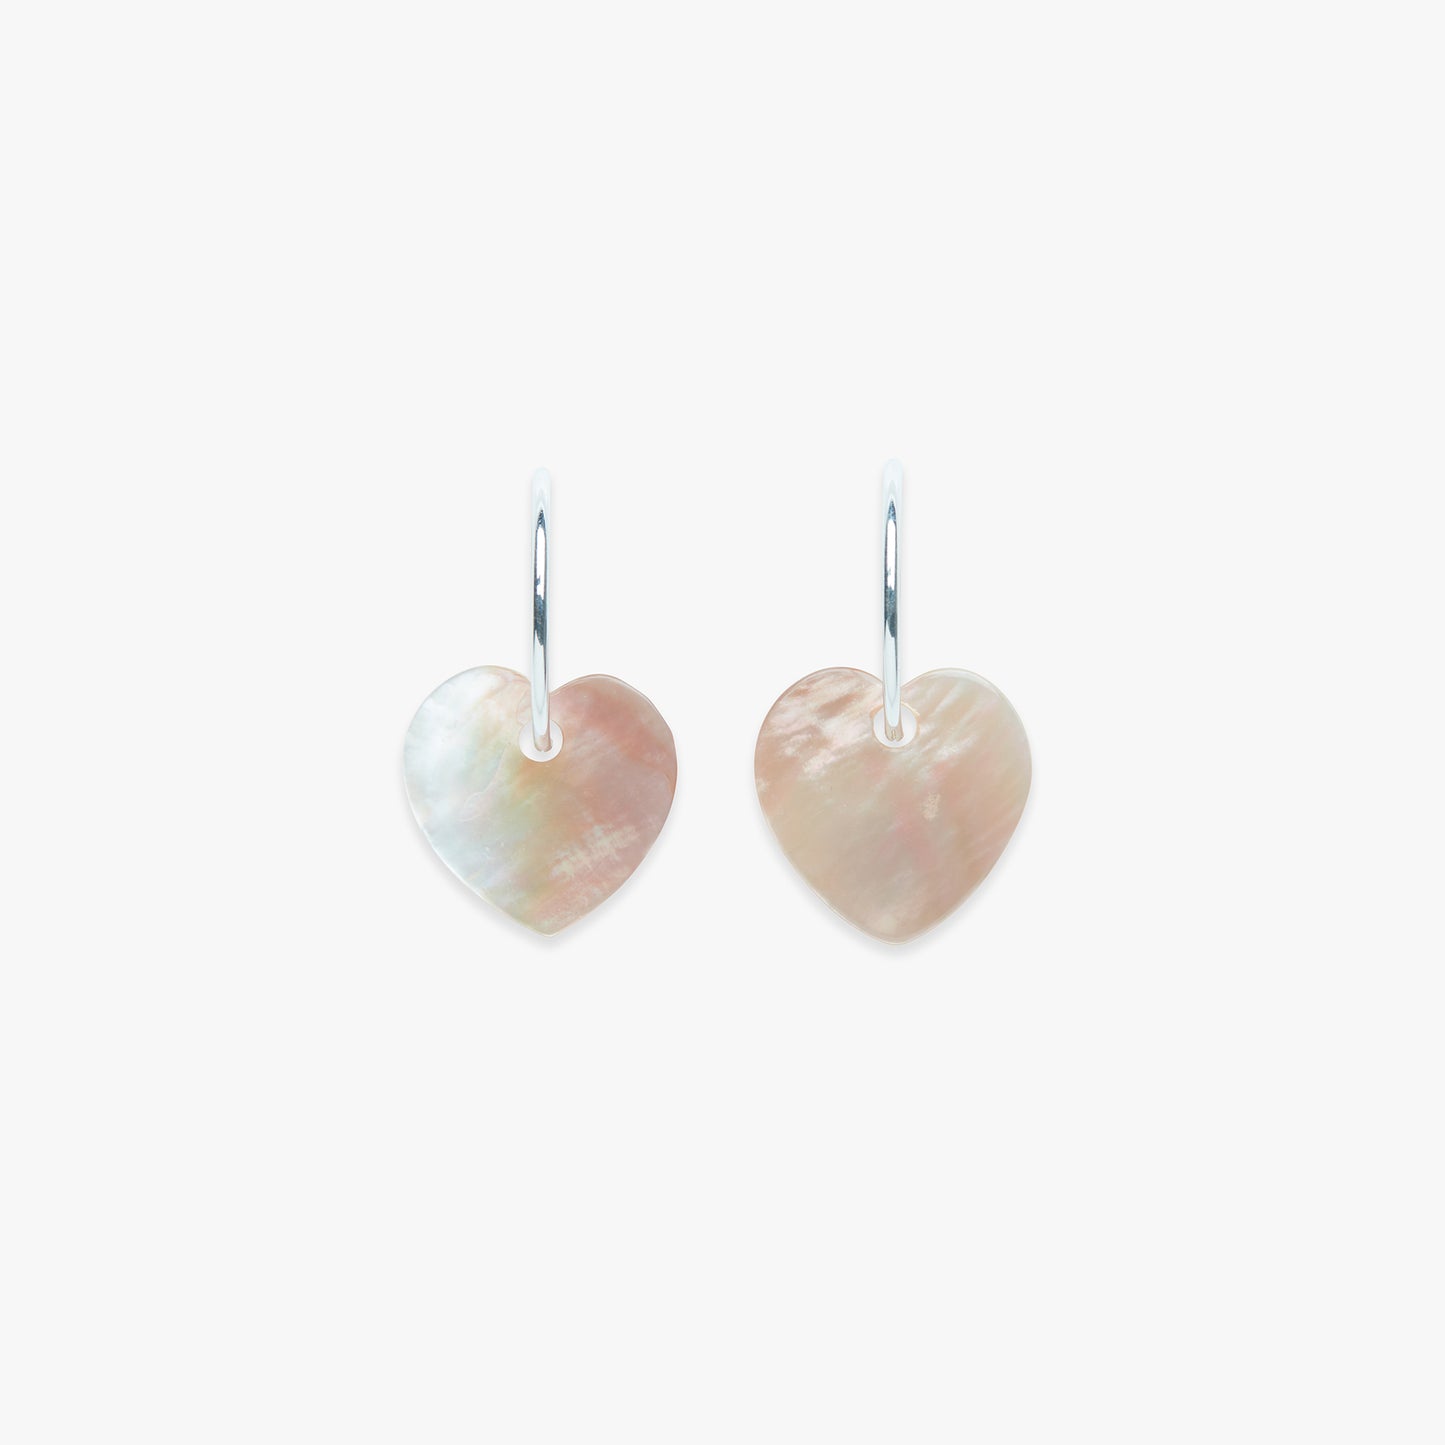 Blush heart earring silver